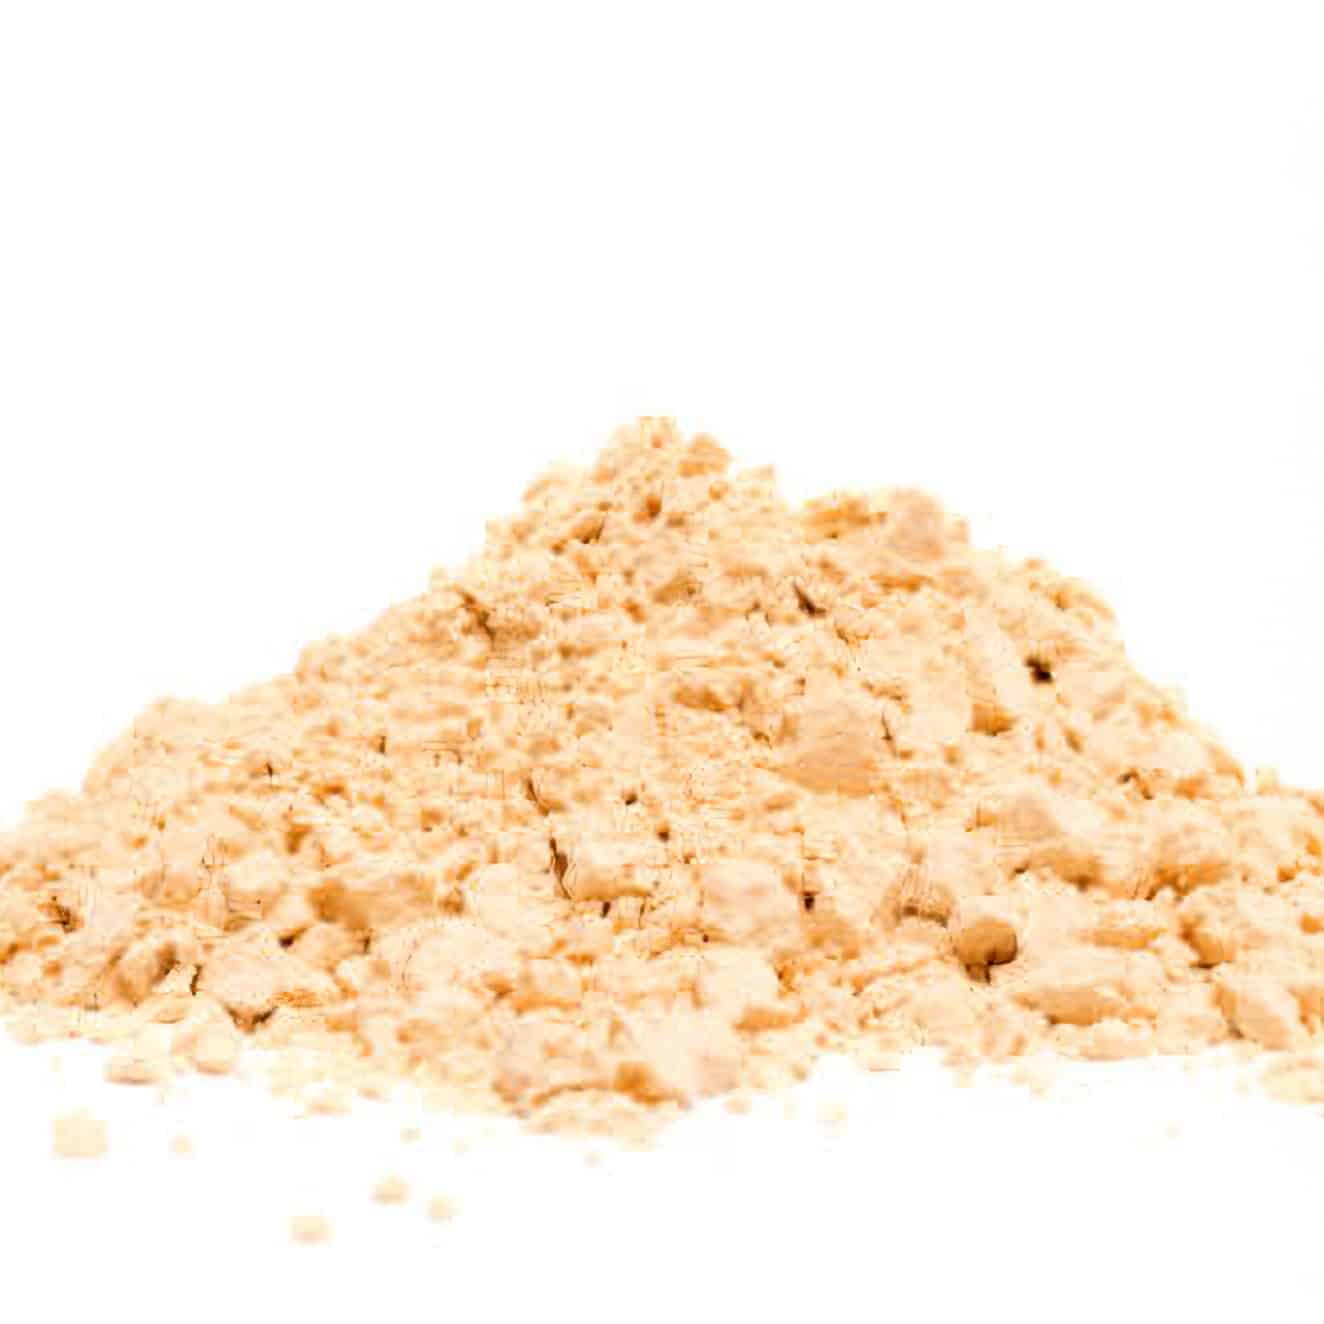 Peanut Protein Powder